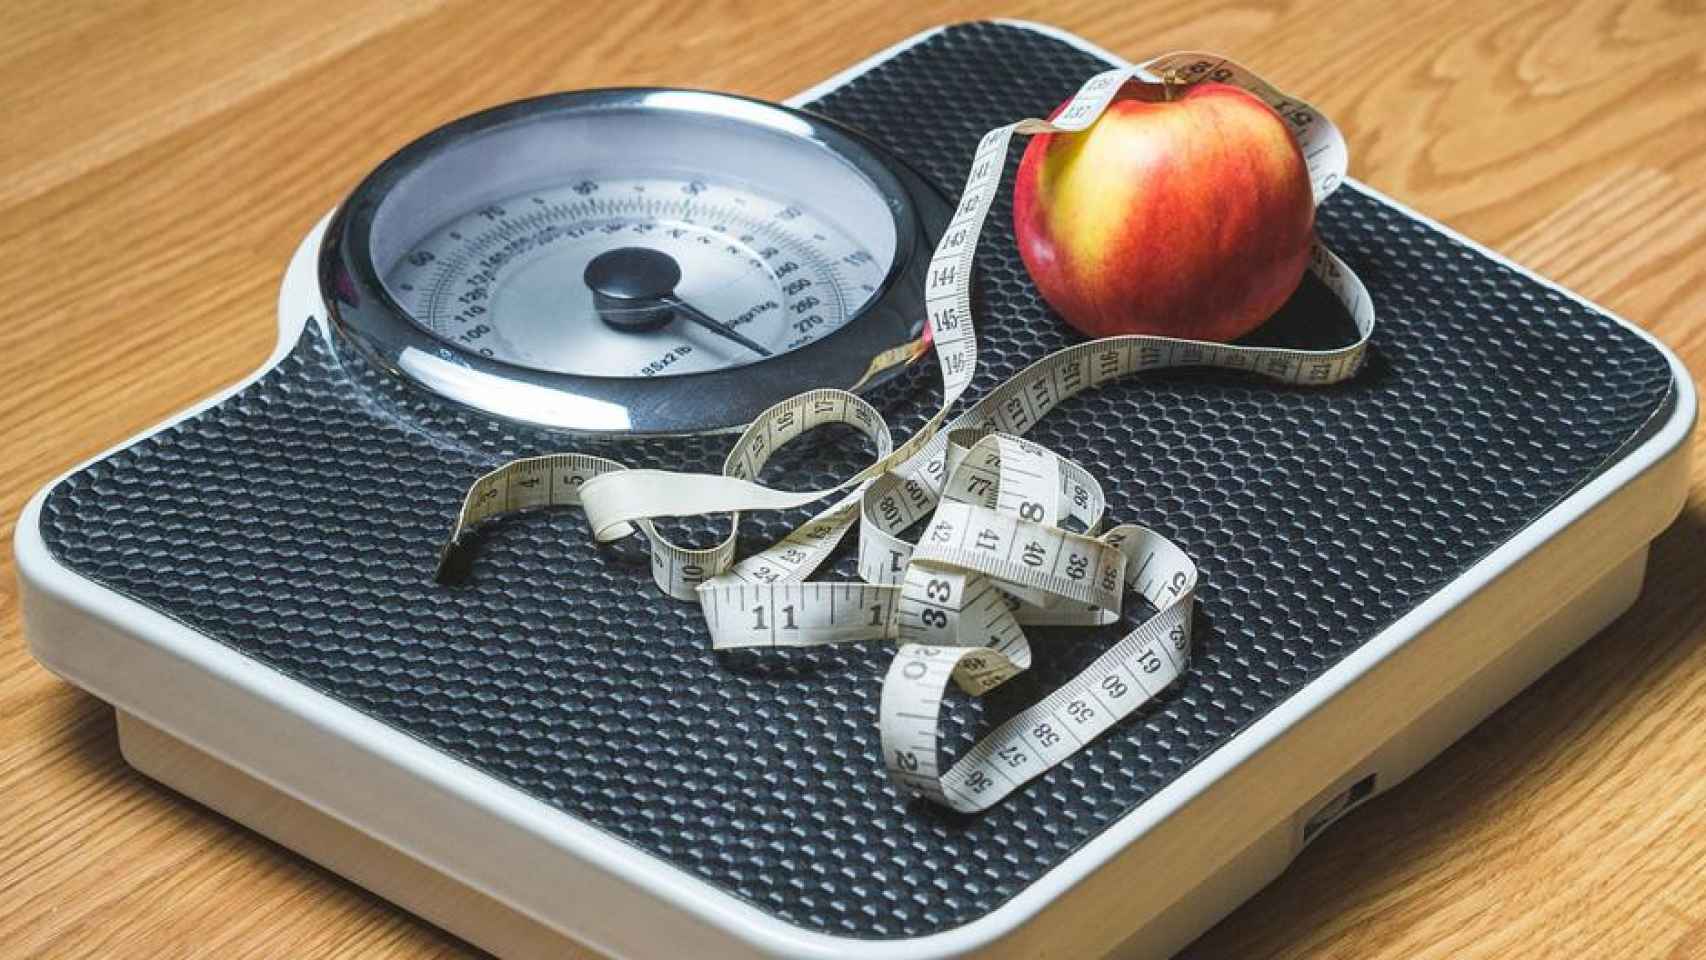 Báscula, manzana y cinta métrica para perder peso / PIXABAY